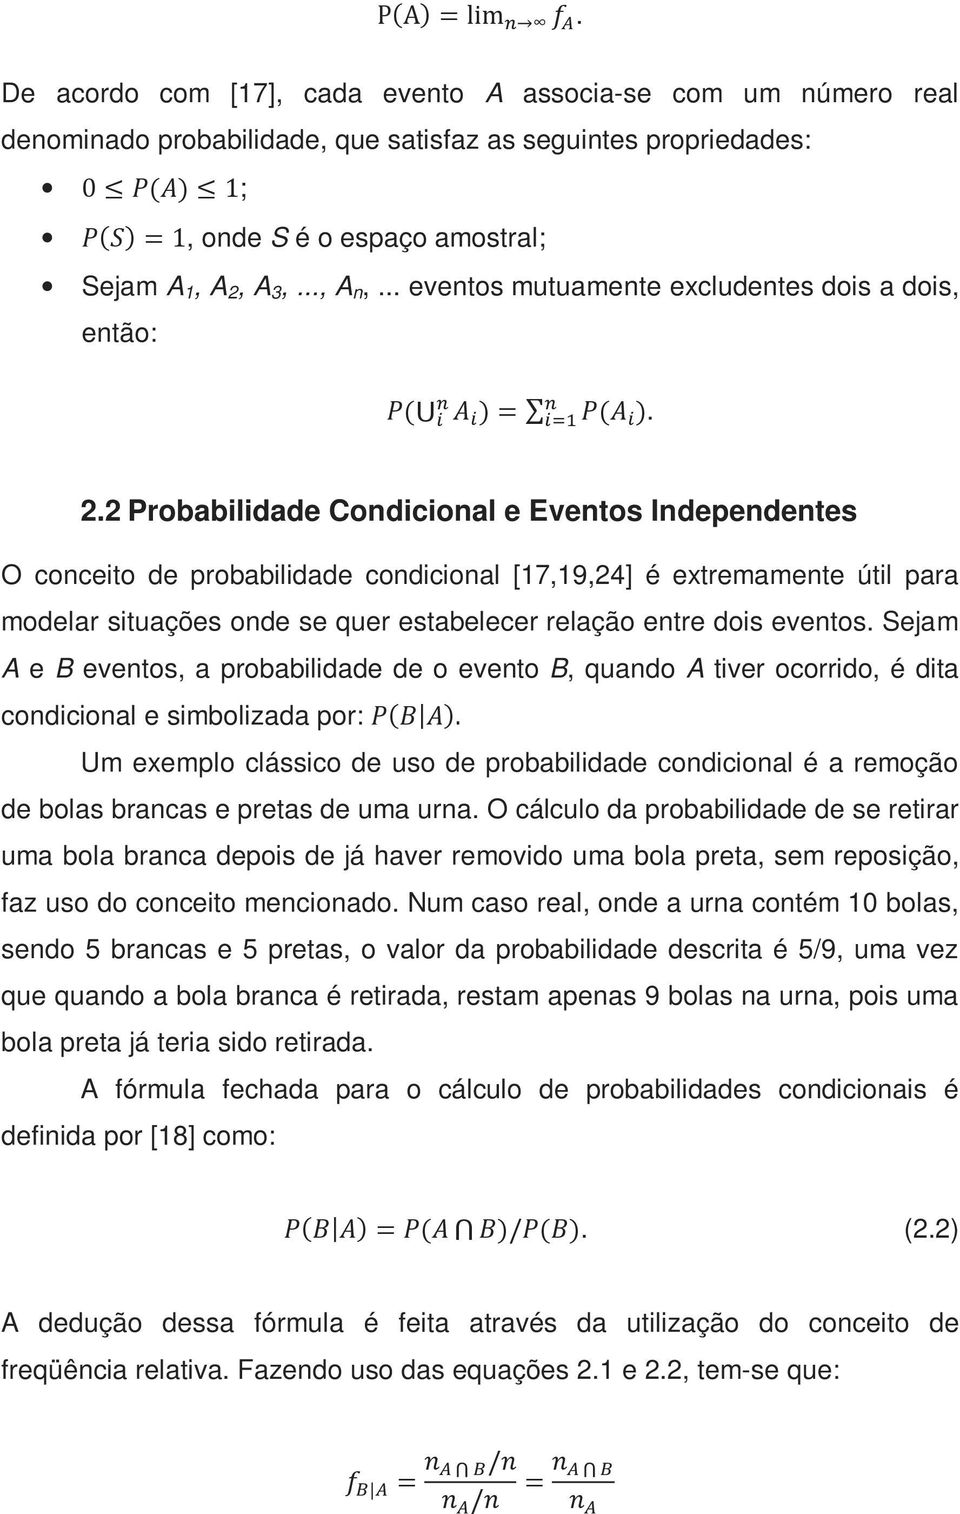 2 Probabilidade Condicional e Eventos Independentes O conceito de probabilidade condicional [17,19,24] é extremamente útil para modelar situações onde se quer estabelecer relação entre dois eventos.